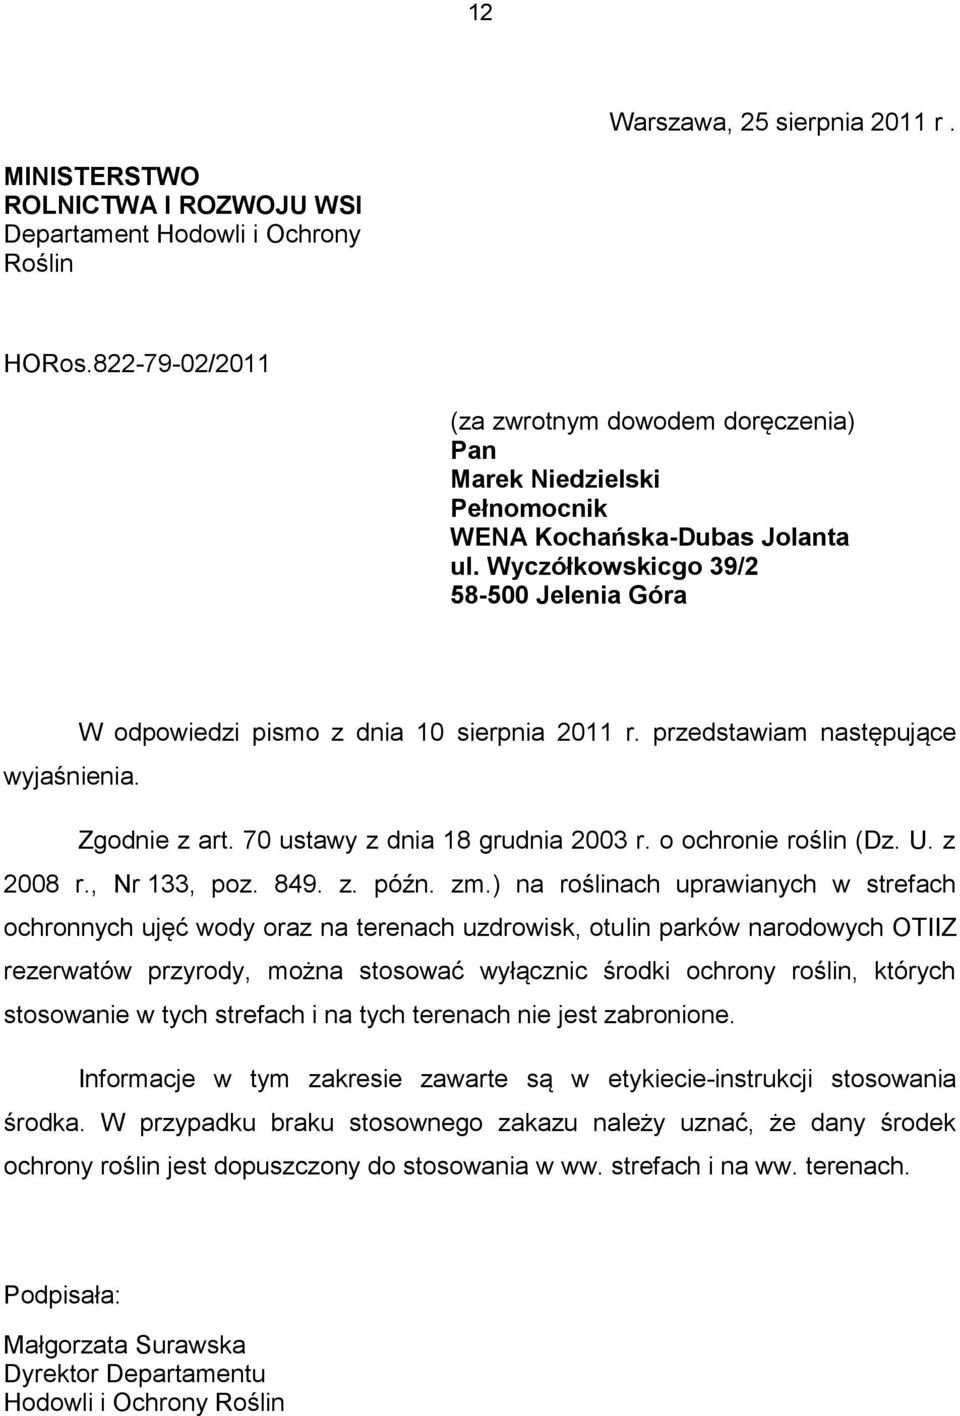 Wyczółkowskicgo 39/2 58-500 Jelenia Góra W odpowiedzi pismo z dnia 10 sierpnia 2011 r. przedstawiam następujące wyjaśnienia. Zgodnie z art. 70 ustawy z dnia 18 grudnia 2003 r. o ochronie roślin (Dz.